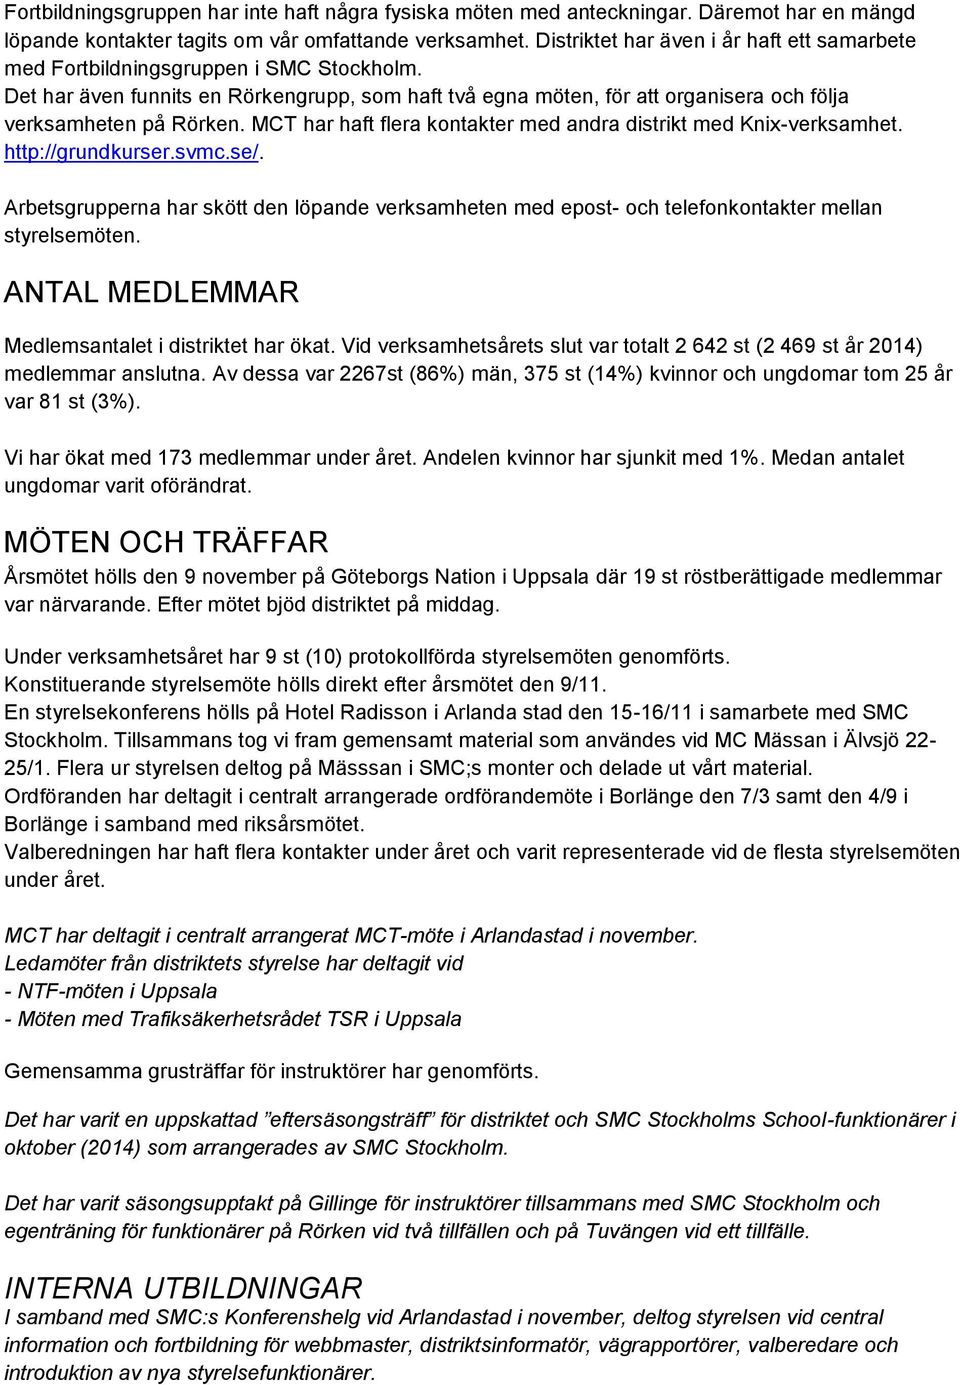 MCT har haft flera kontakter med andra distrikt med Knix-verksamhet. http://grundkurser.svmc.se/.